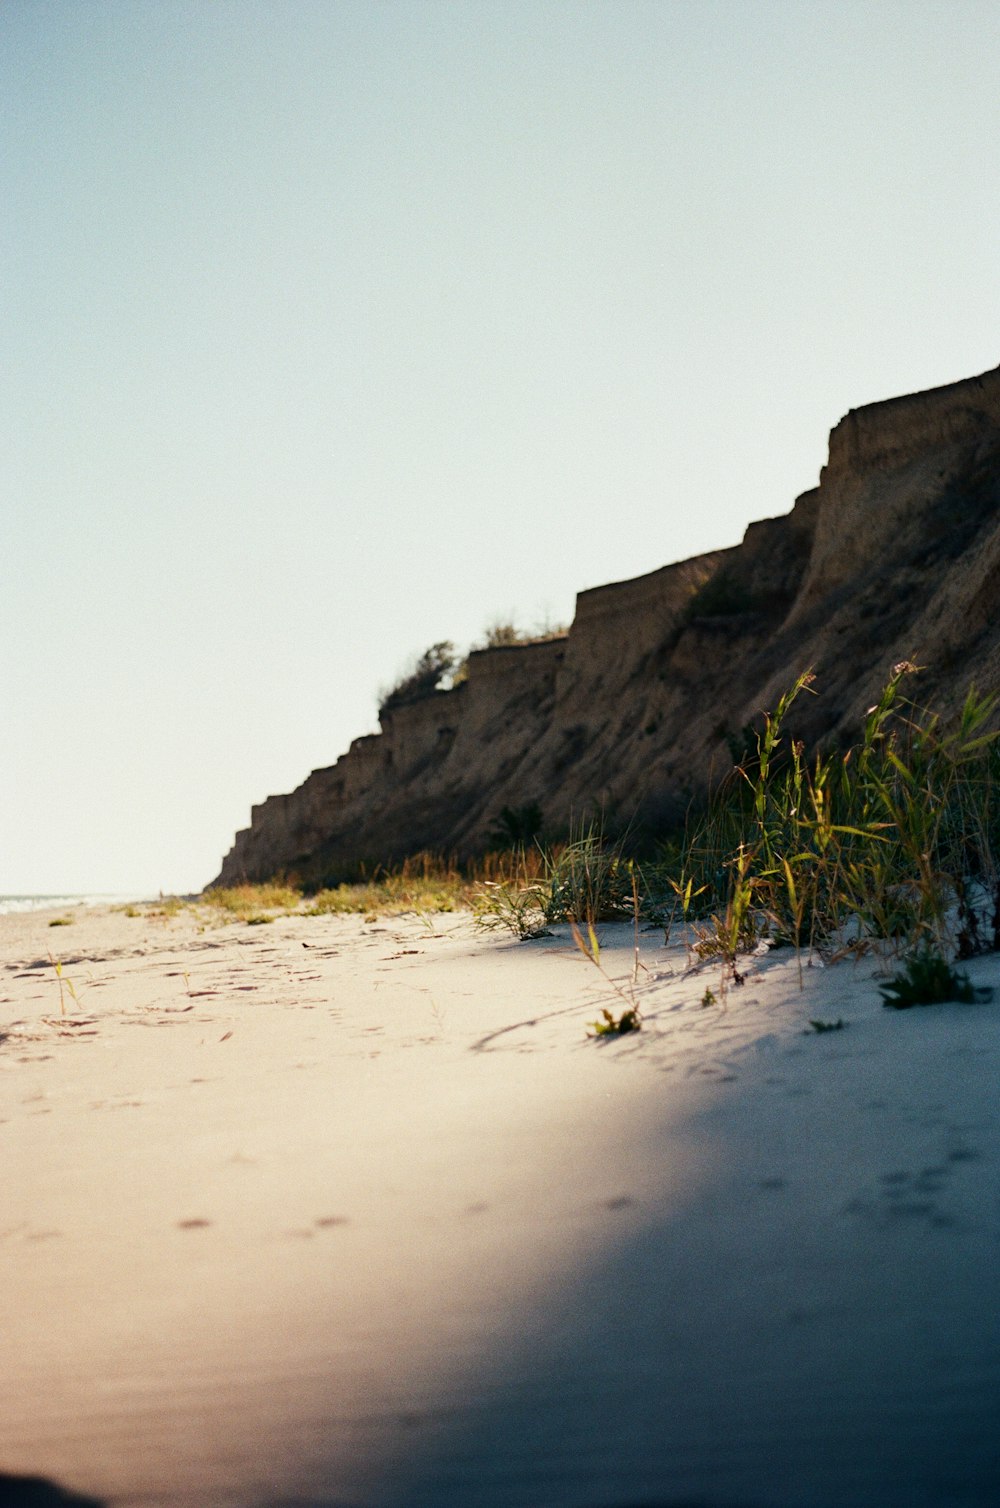 une personne sur une planche de surf au sommet d’une plage de sable